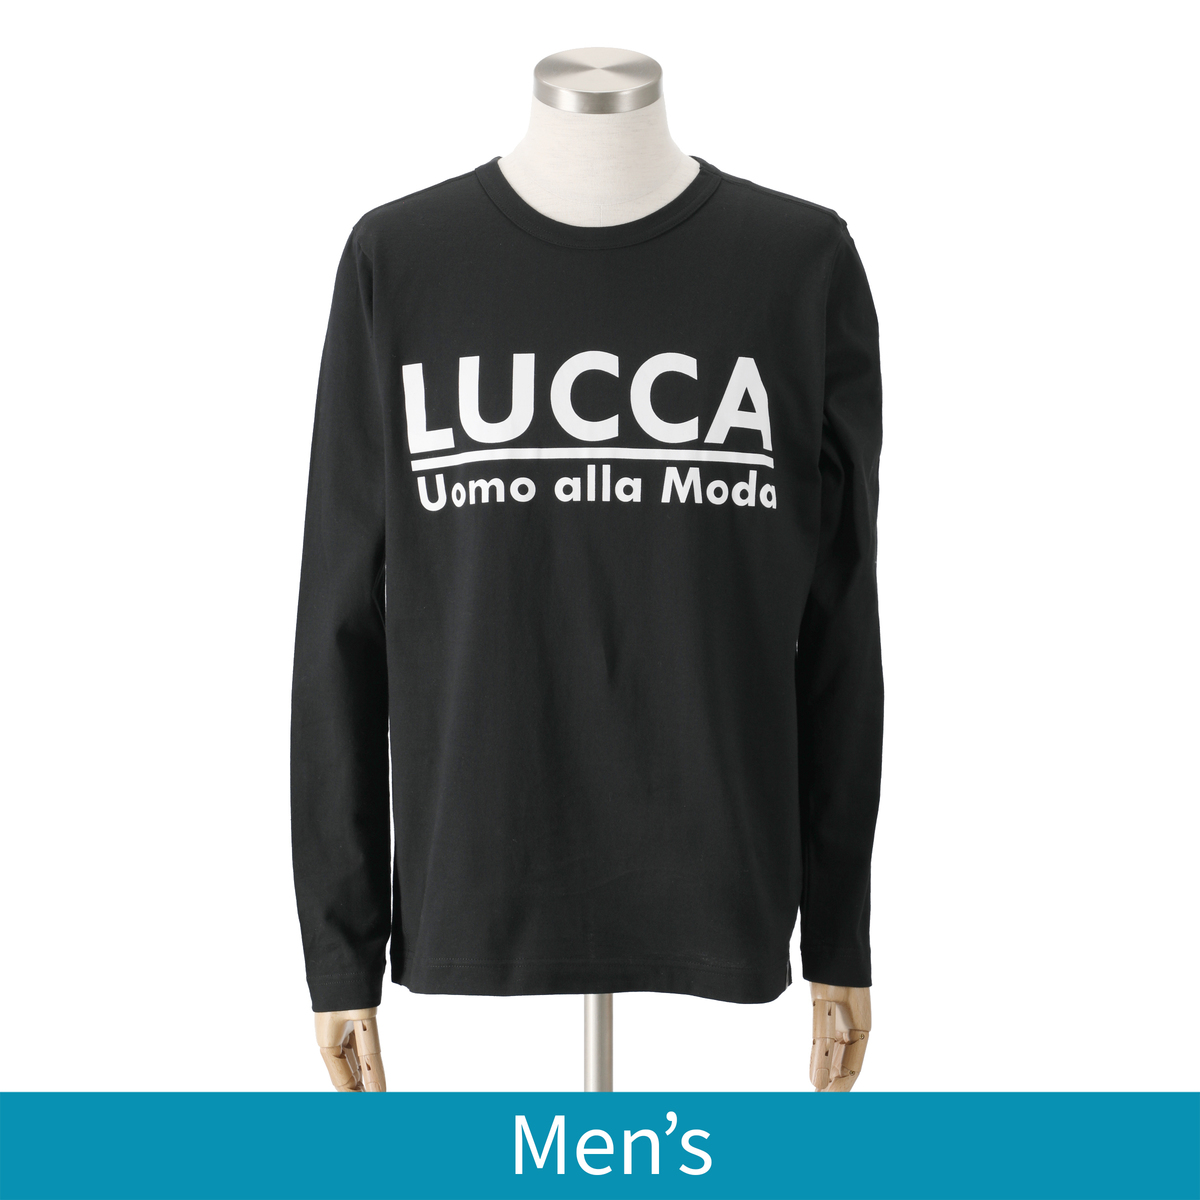 ＜QVCジャパン＞ Lucca Uomo alla moda ロングスリーブプリントTシャツ ＜サイズ＞ M ＜カラー＞ ブラック